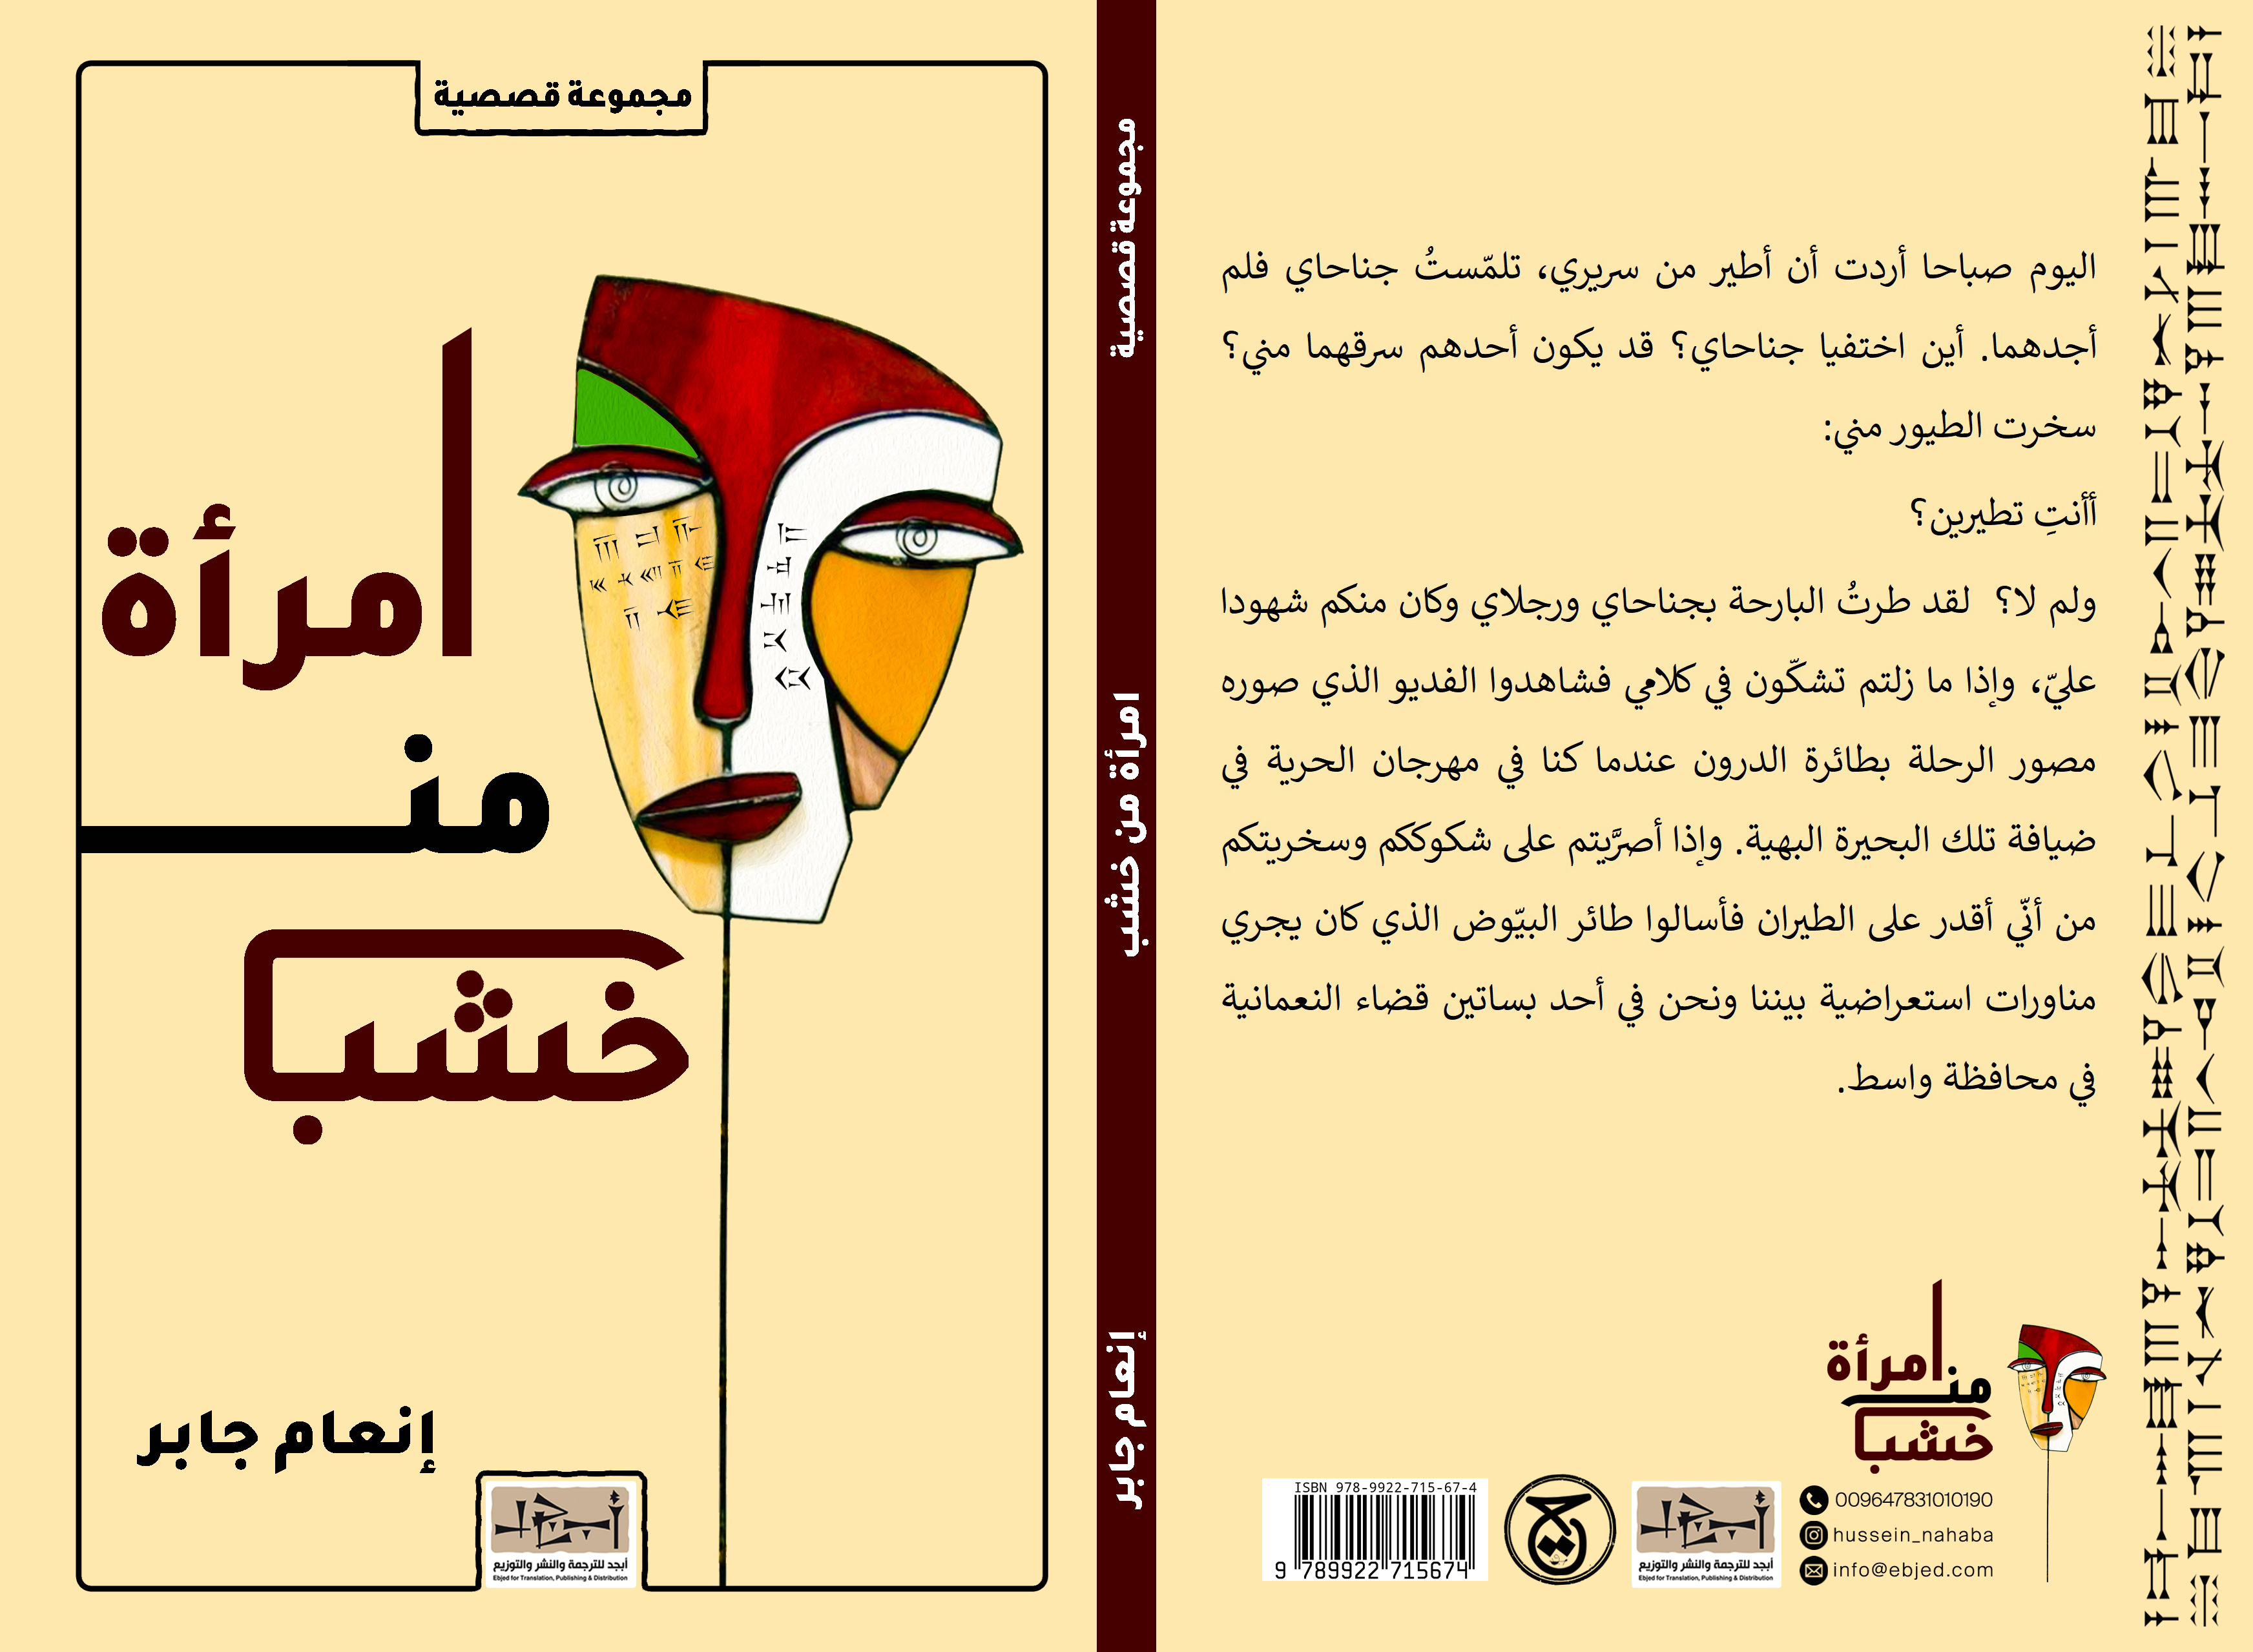 الكتاب: امرأة من خشب المؤلف:  إنعام جابر التصنيف: مجموعة قصصية